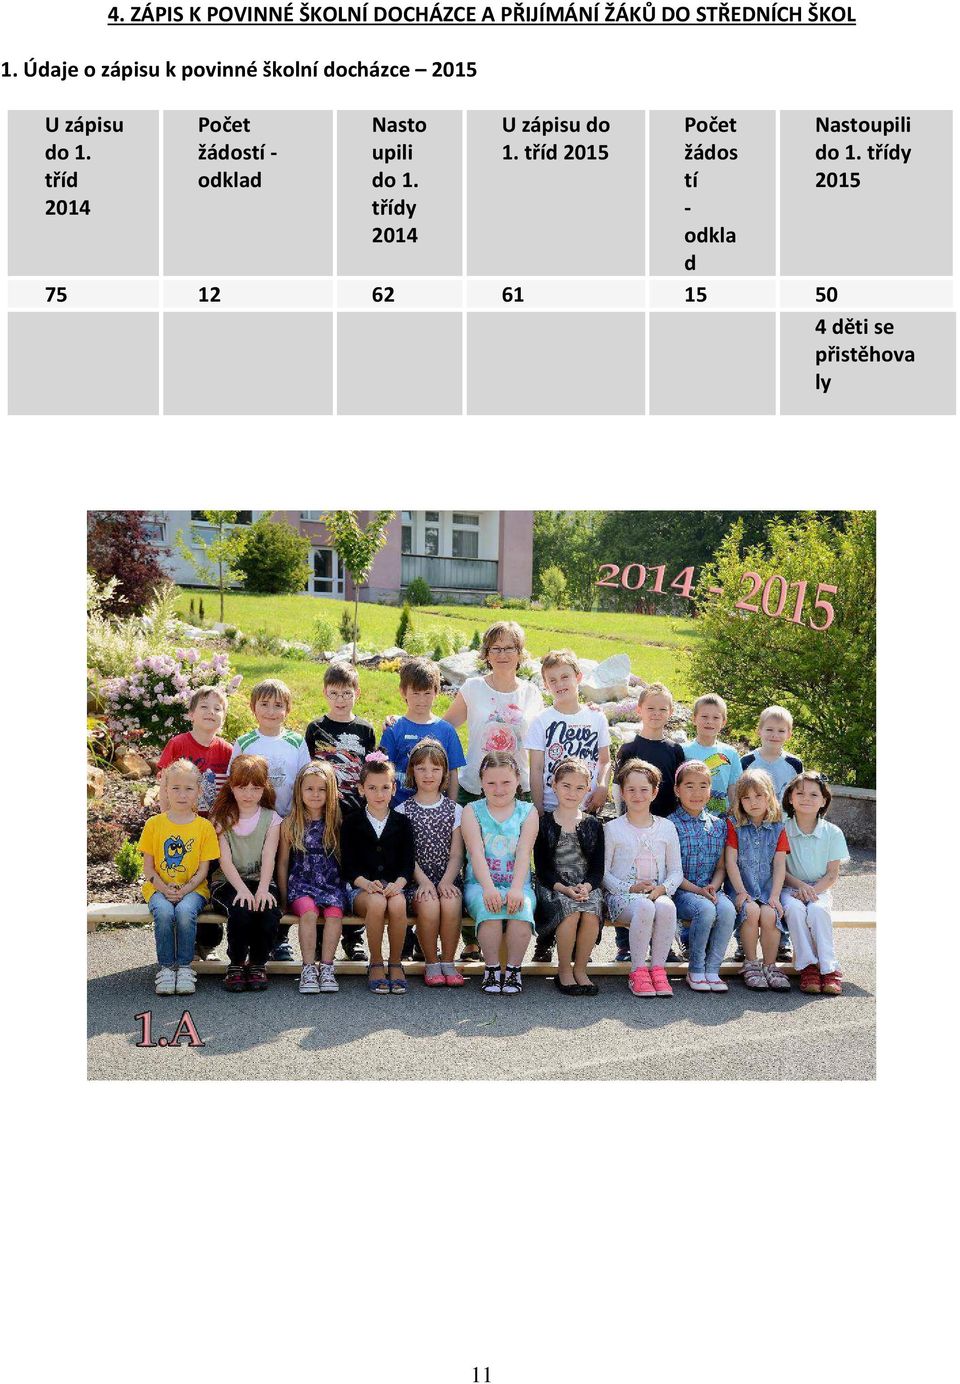 tříd 2014 Počet žádostí - odklad Nasto upili do 1. třídy 2014 U zápisu do 1.